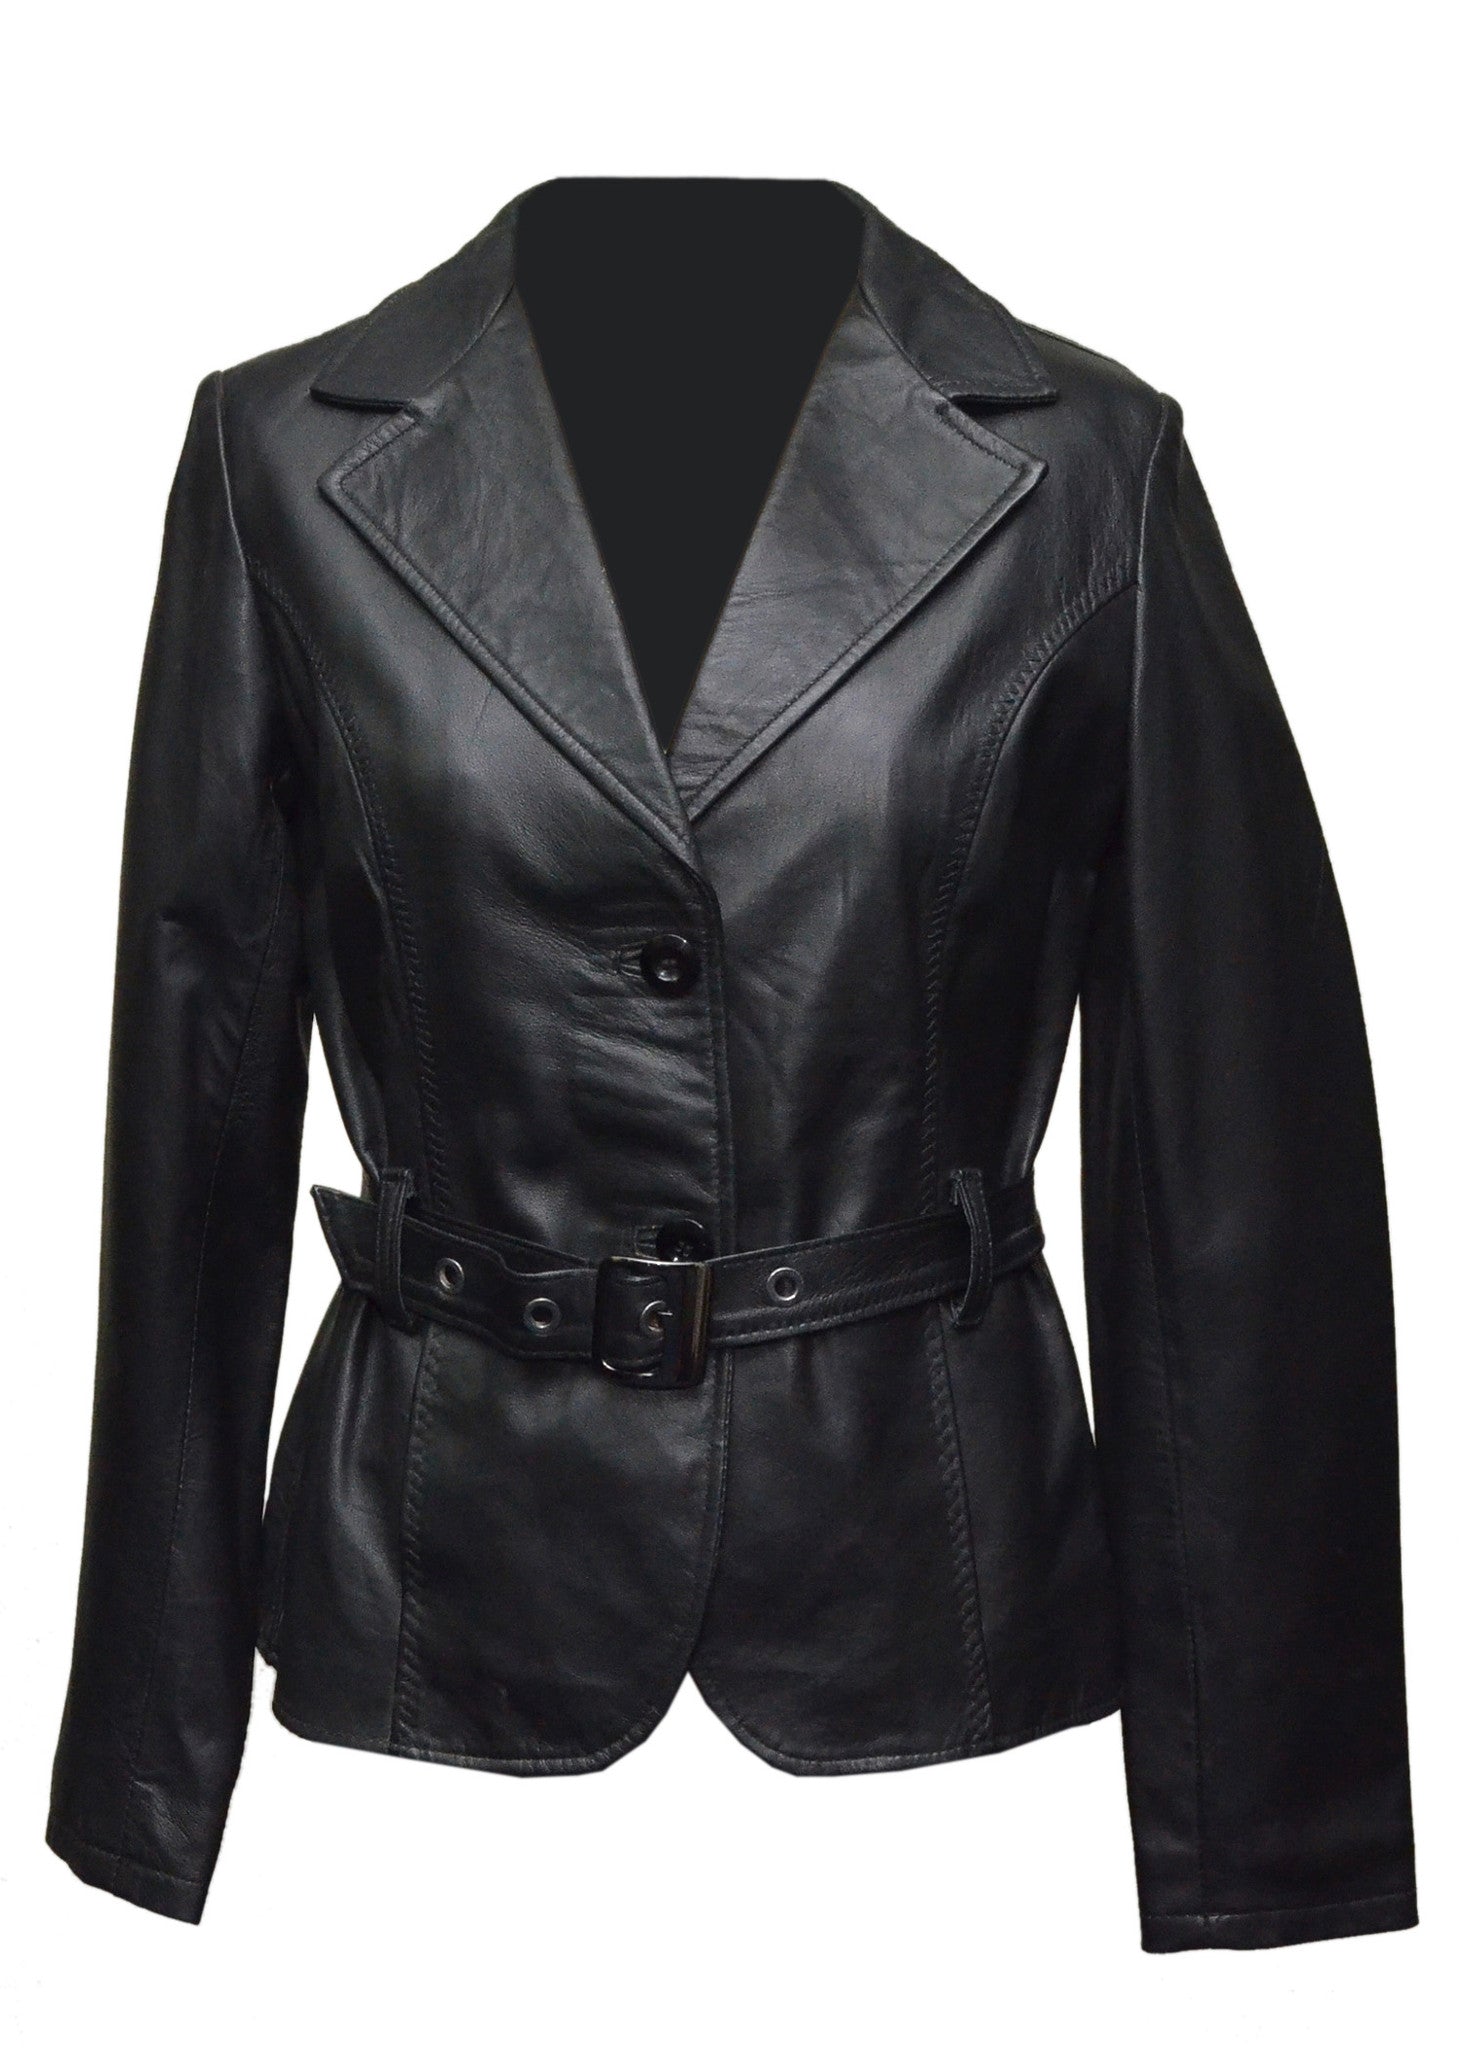 Soft Black Leather Belted Women Jacket | Women Biker Jackets – The Film ...